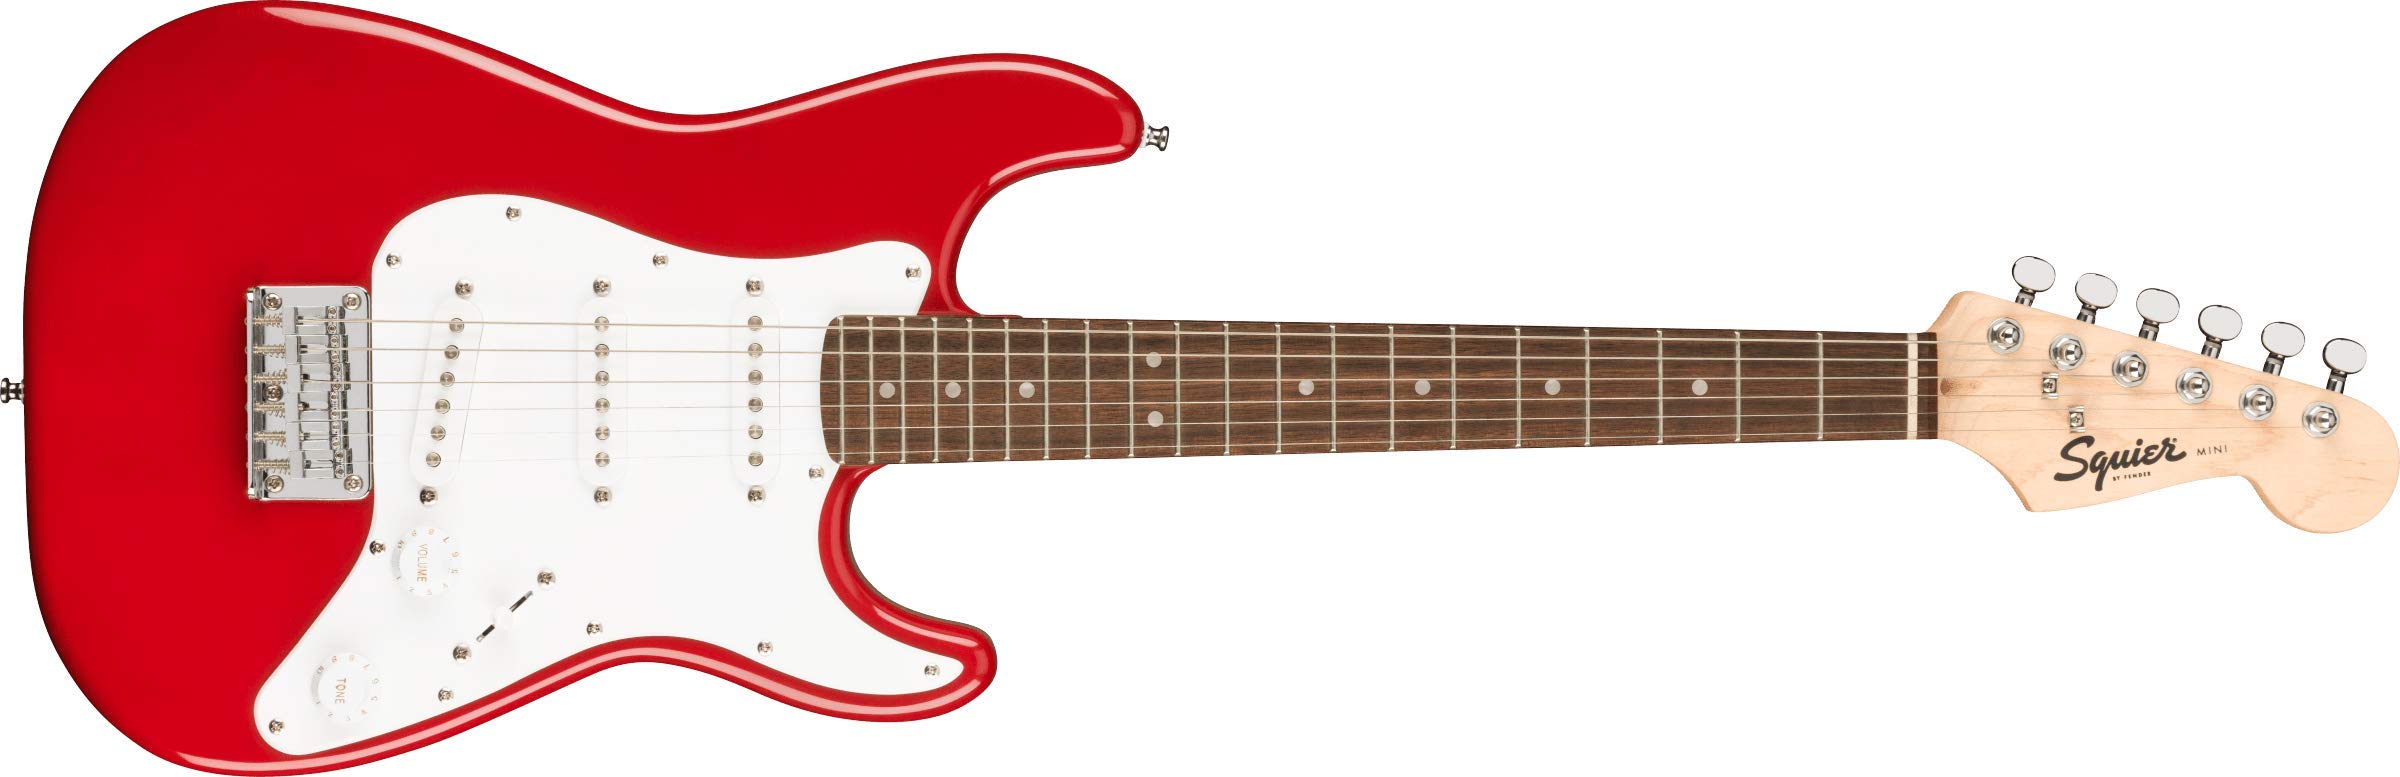 Squier मिनी स्ट्रैट इलेक्ट्रिक गिटार- लॉरेल फ़िंगरबोर्ड...